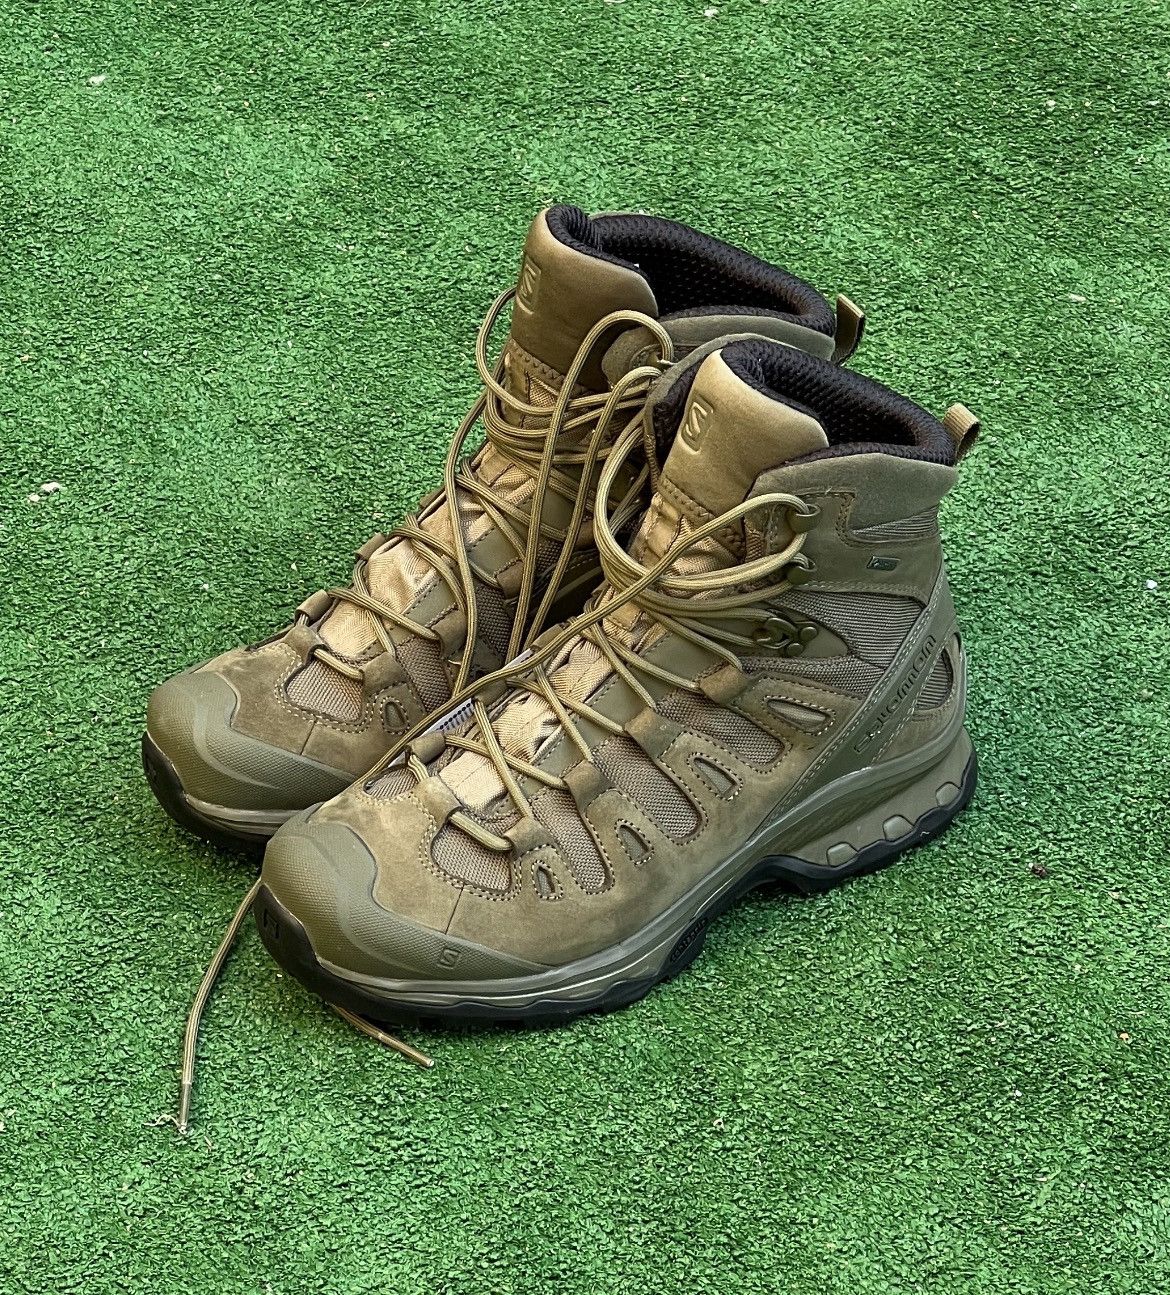 Salomon Salomon Quest 4D GTX Boots Size US 9.5 / EU 42-43 - 1 Preview